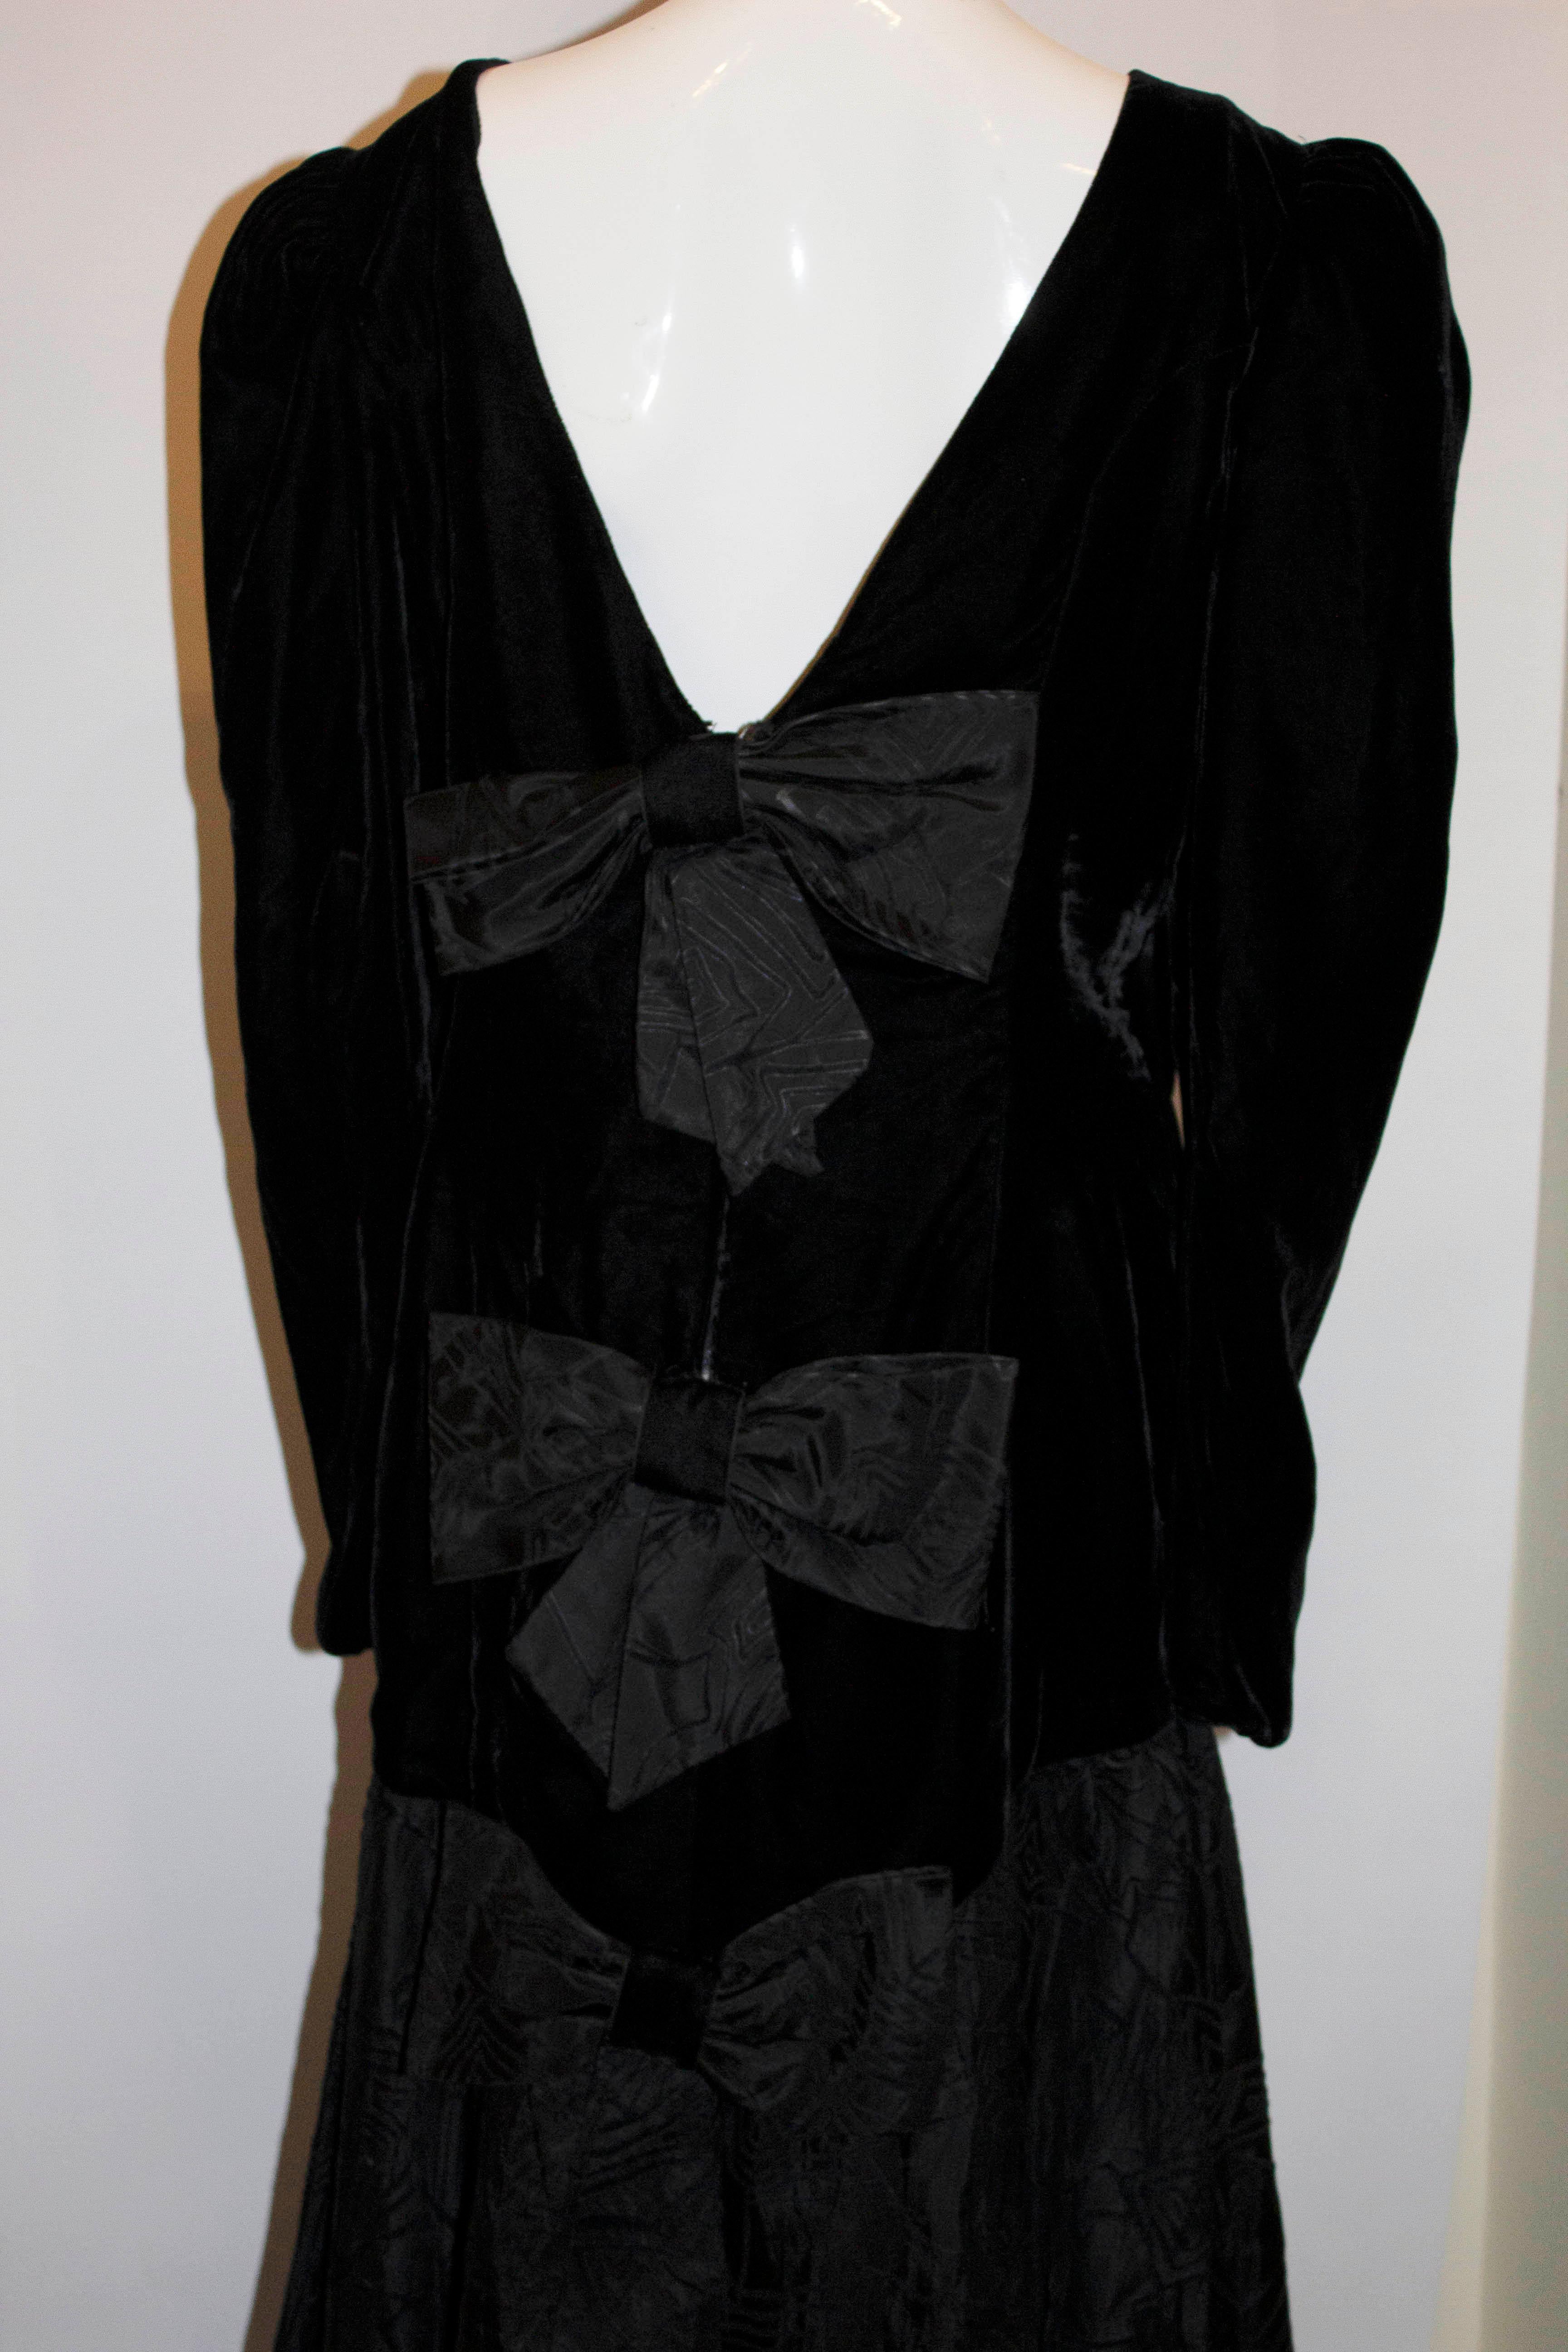 Ein wunderschönes Abendkleid aus den 1980er Jahren. Das Kleid ist schwarz mit Schleifen auf der Vorder- und Rückseite und einem Taftrock mit Netz darunter. 
Maße: Büste 38'', Länge 53''

